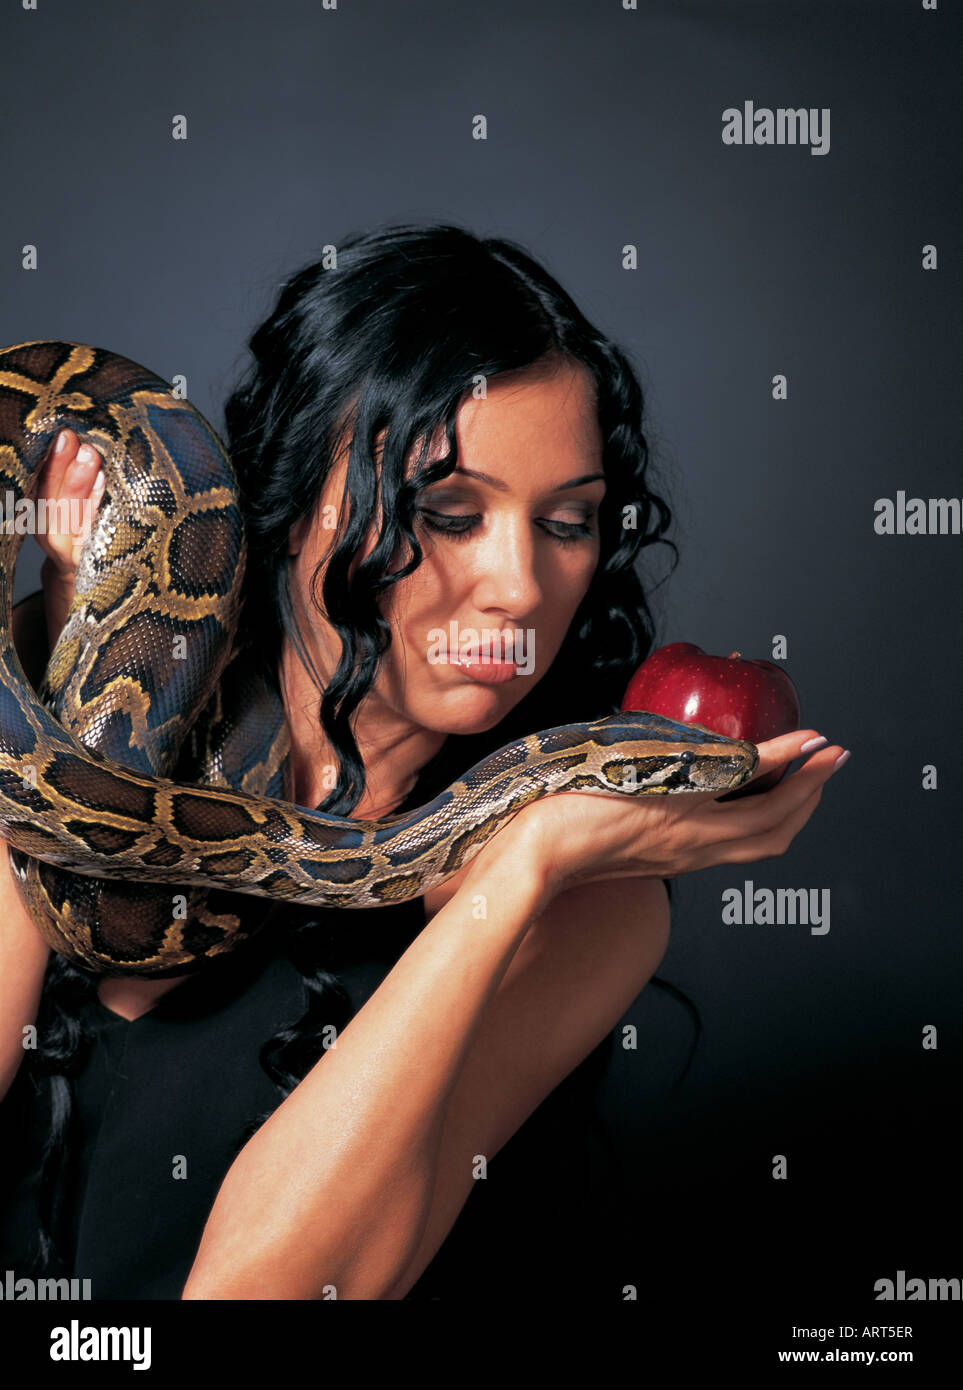 Женщины гадюки. Девушка змея. Фотосессия со змеями. Женщина гадюка. Красивые девушки со змеями.